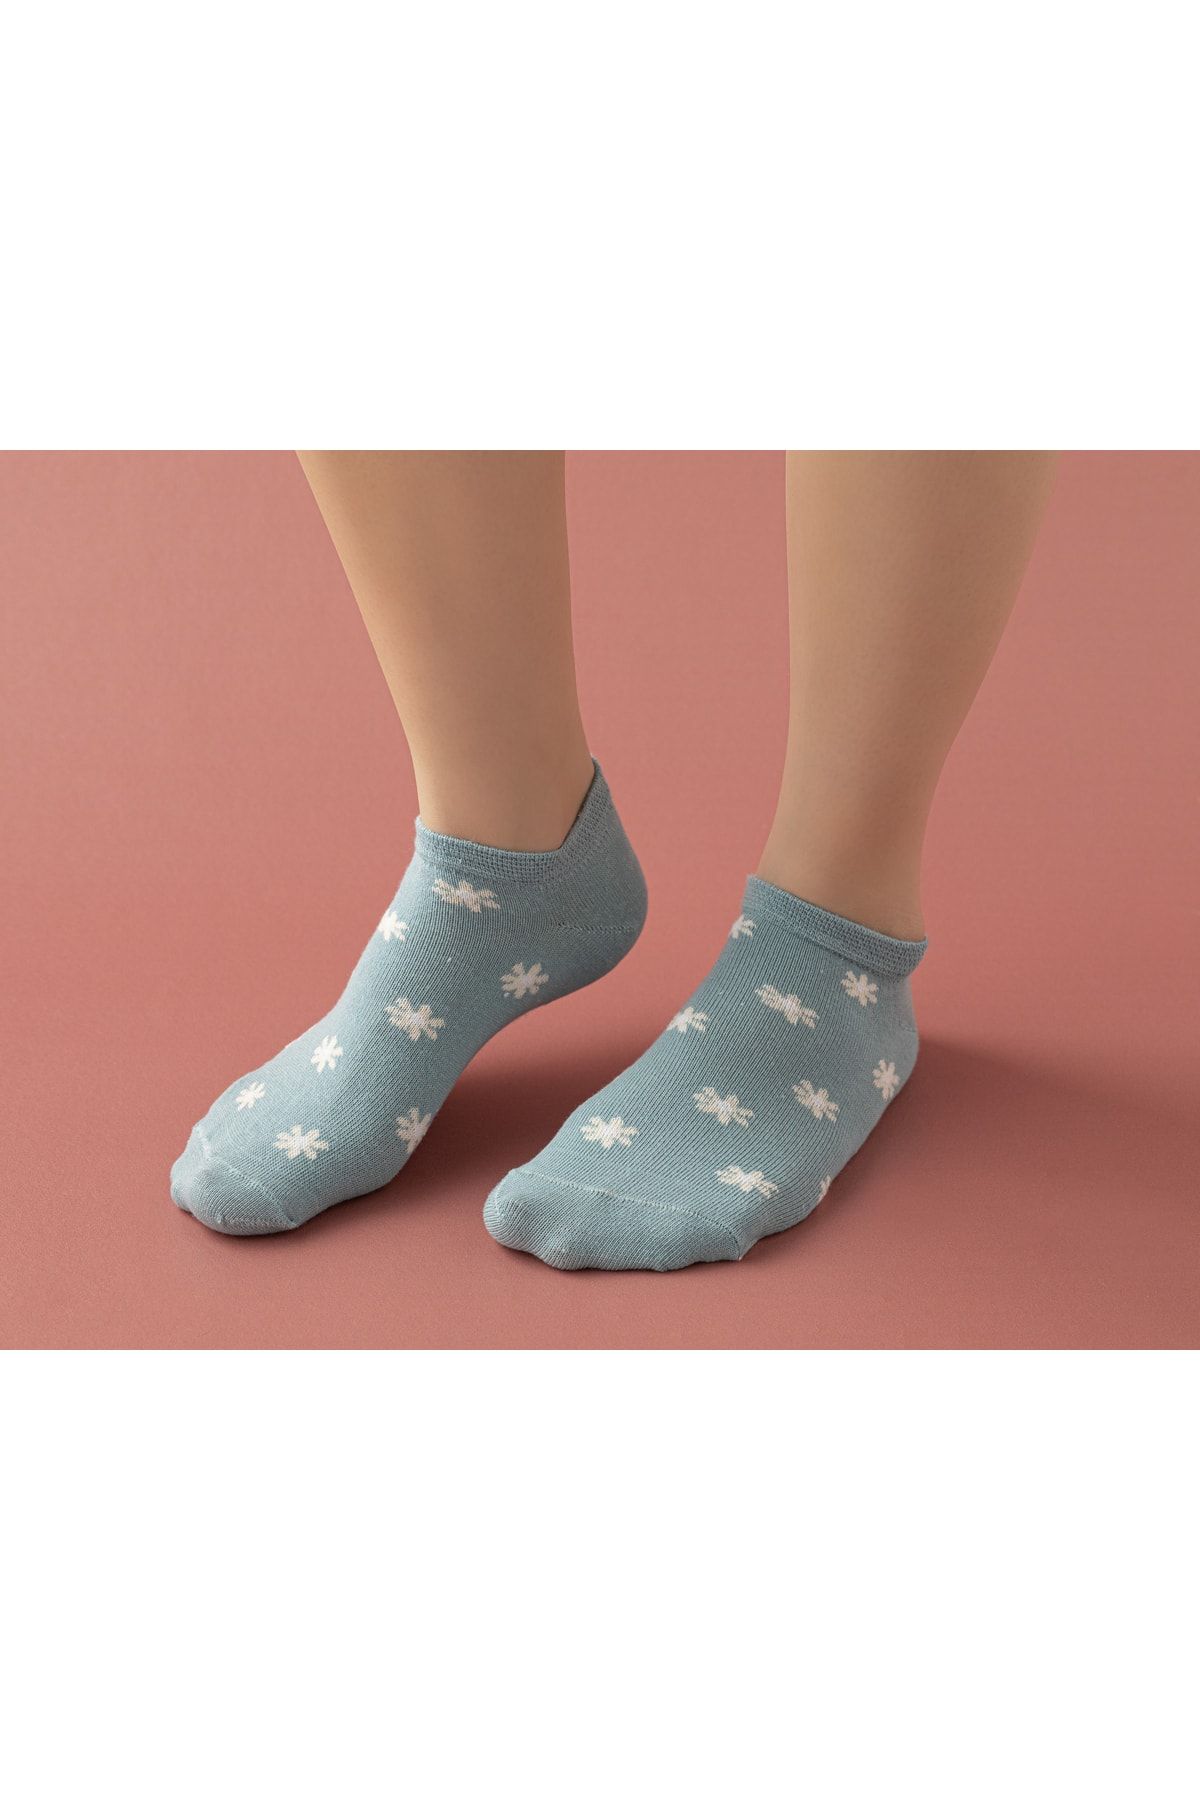 English Home Sanne Pamuk Kadın Üçlü Patik Çorap 36-40 Ekru - Mavi - Lacivert